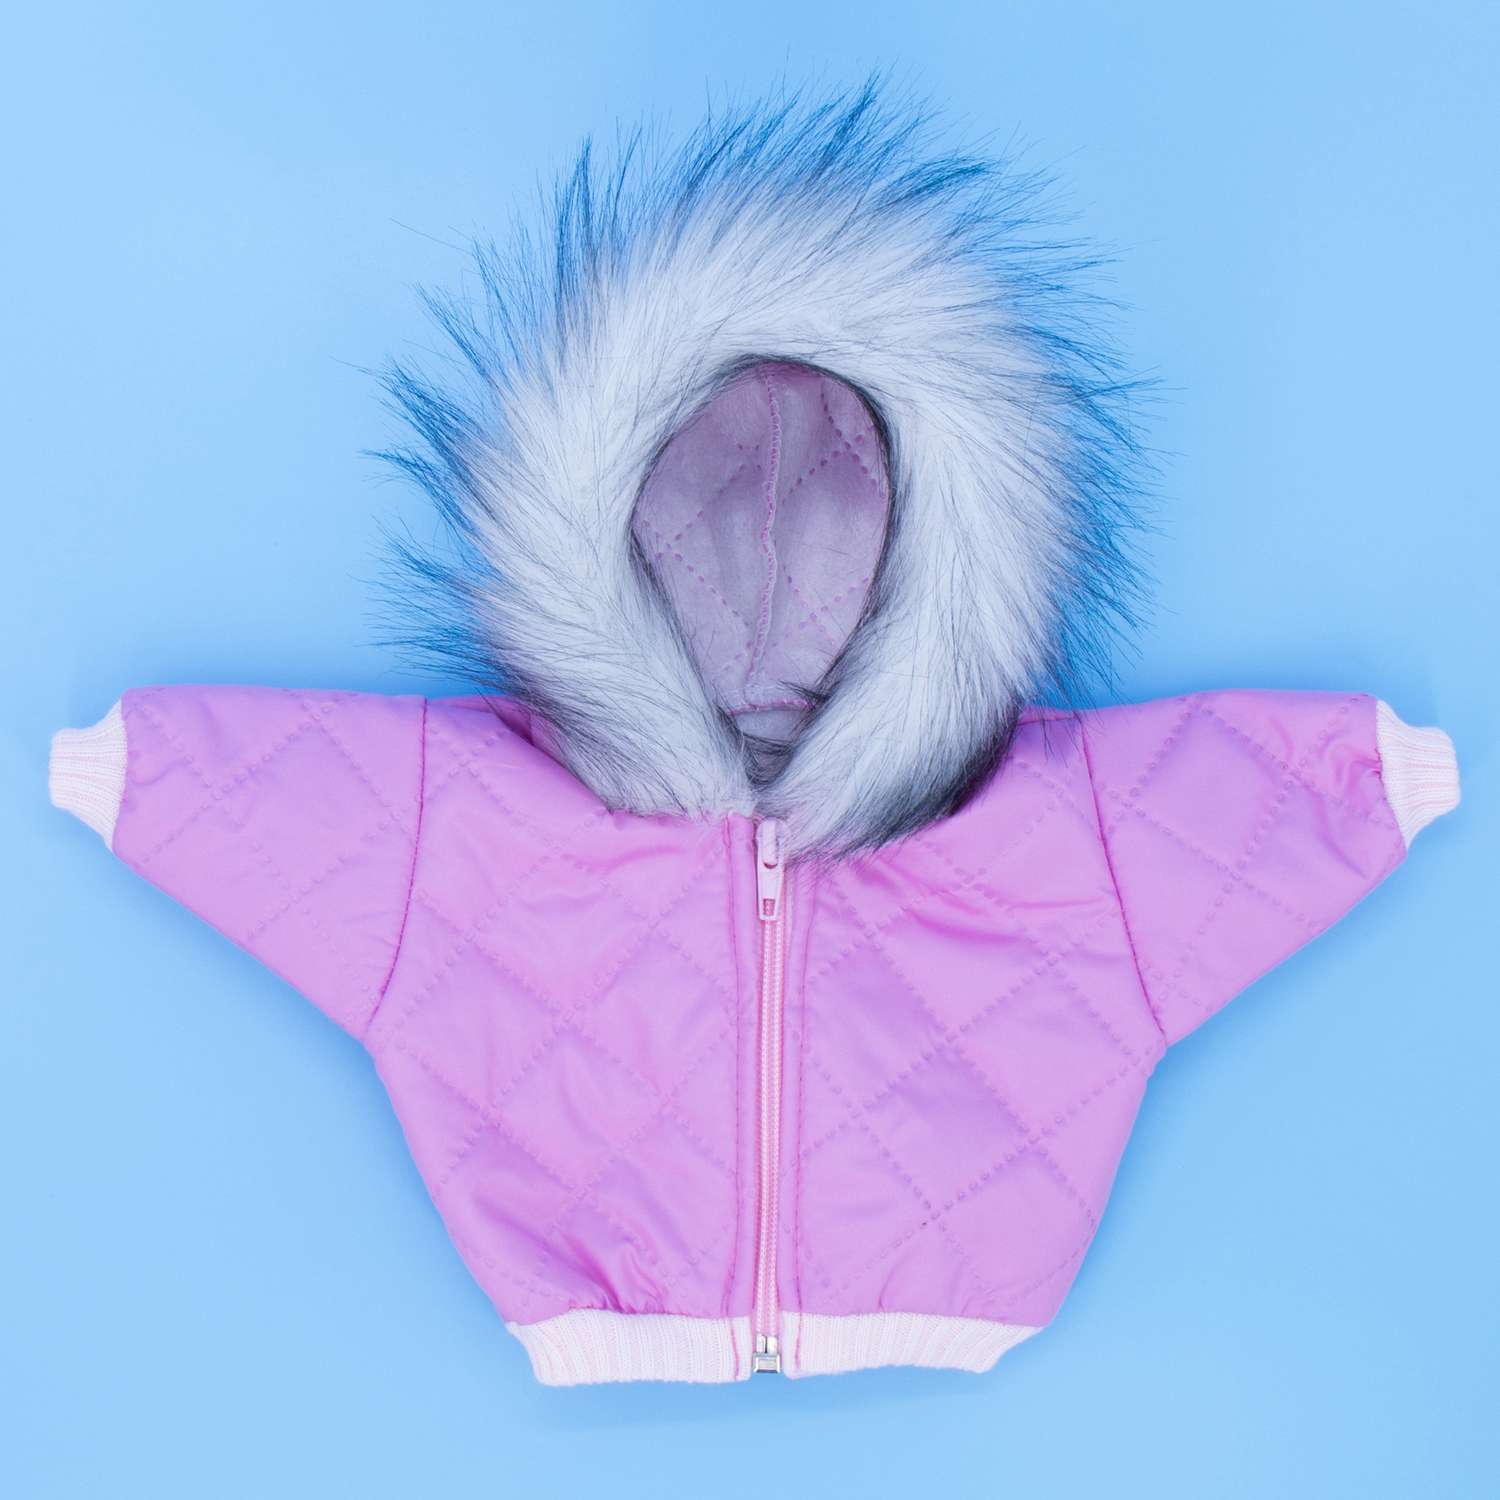 Комплект для пупса Модница 43-48 см: куртка с опушкой джинсы и шапочка 6120 цикламен-розовый 6120цикламен-розовый - фото 12